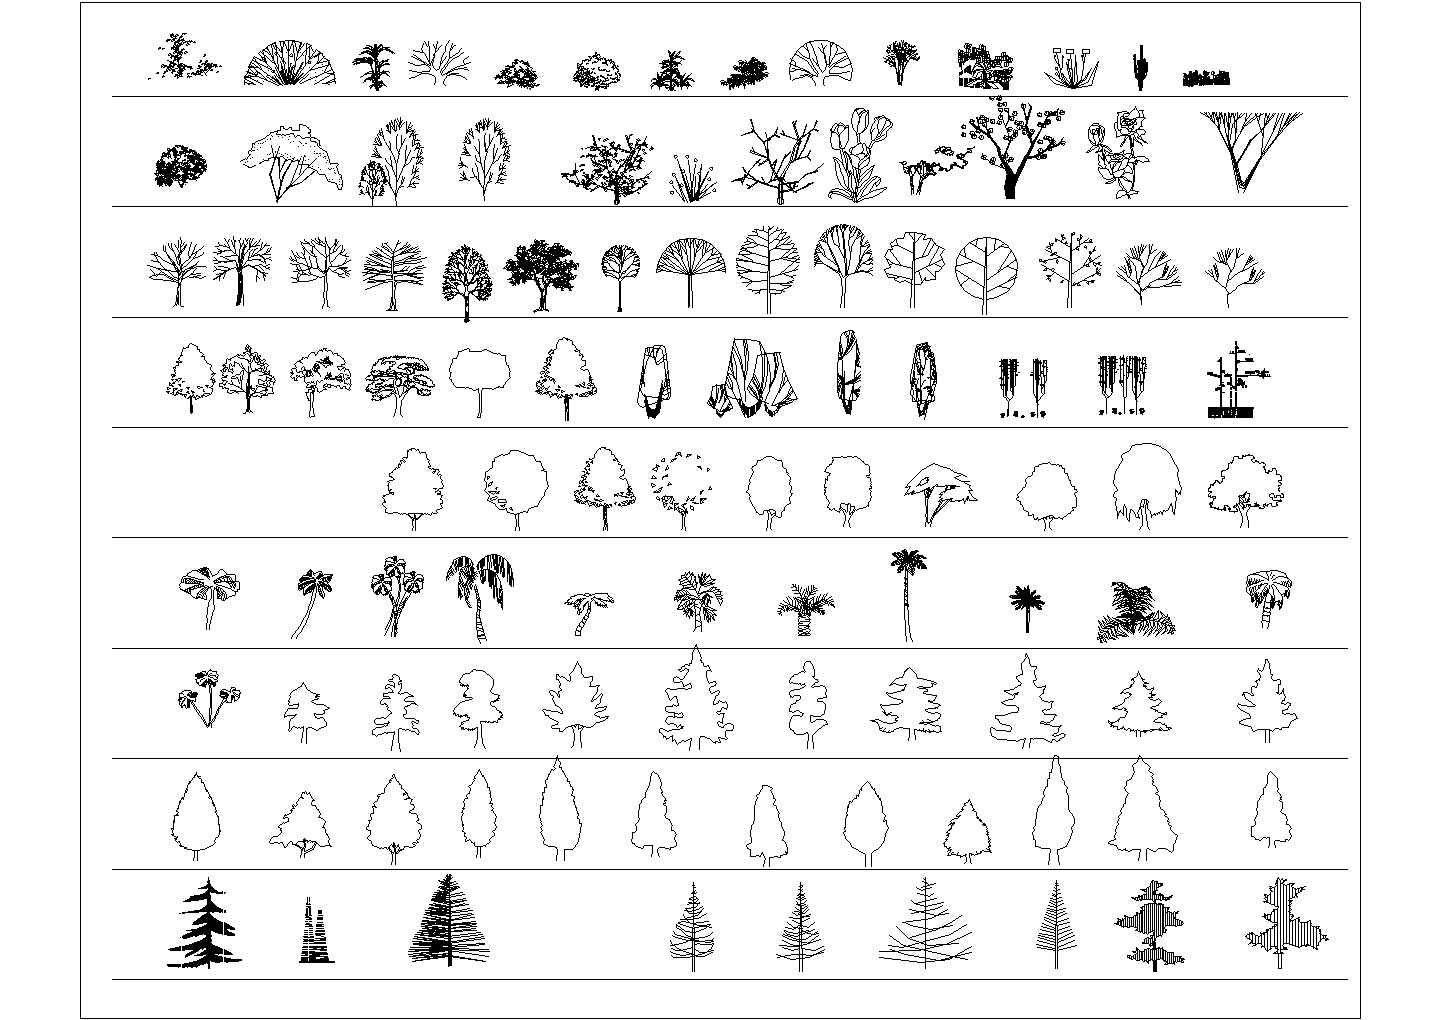 种类丰富的园林树木CAD立面素材图块设计大合集